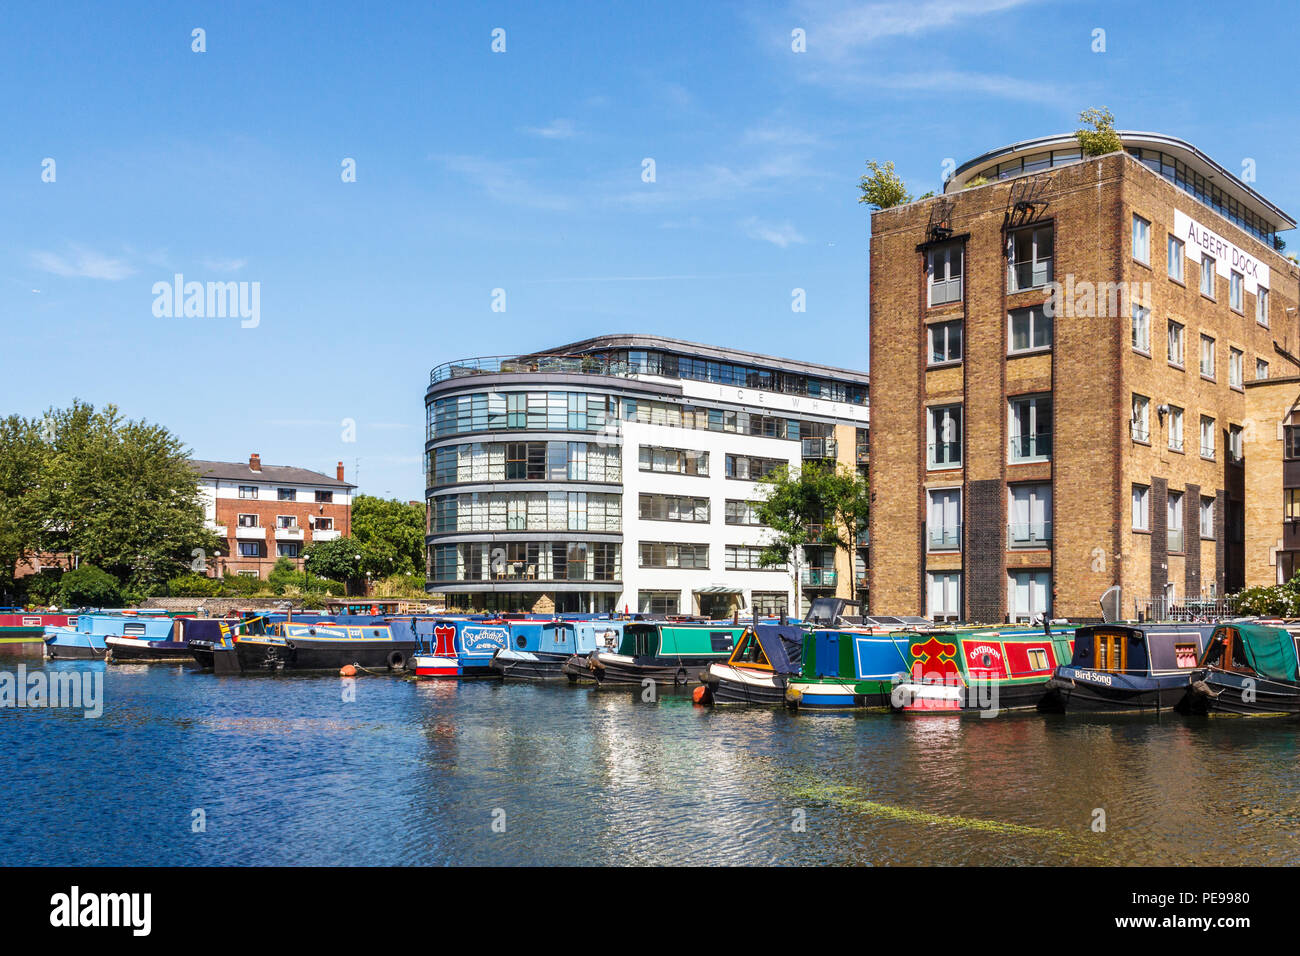 Eis Wharf und Albert Dock, jetzt Apartments, die in Battlebridge Becken auf der Regent's Canal, King's Cross, London, UK Stockfoto